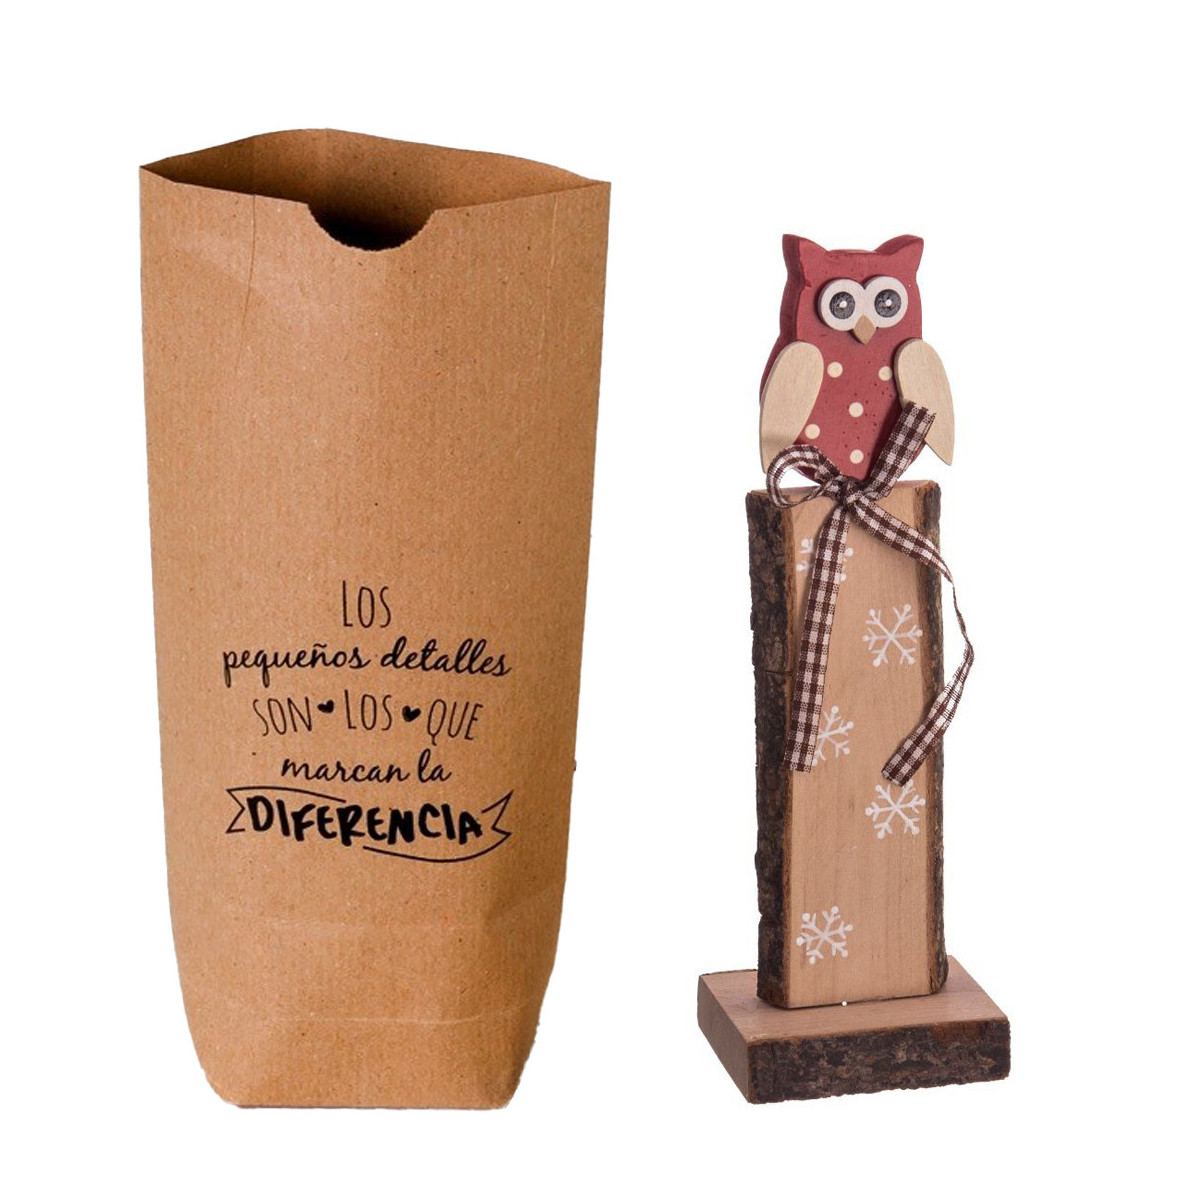 Enfeite de natal em formato de coruja de madeira em saco de papel kraft com frase dedicatória